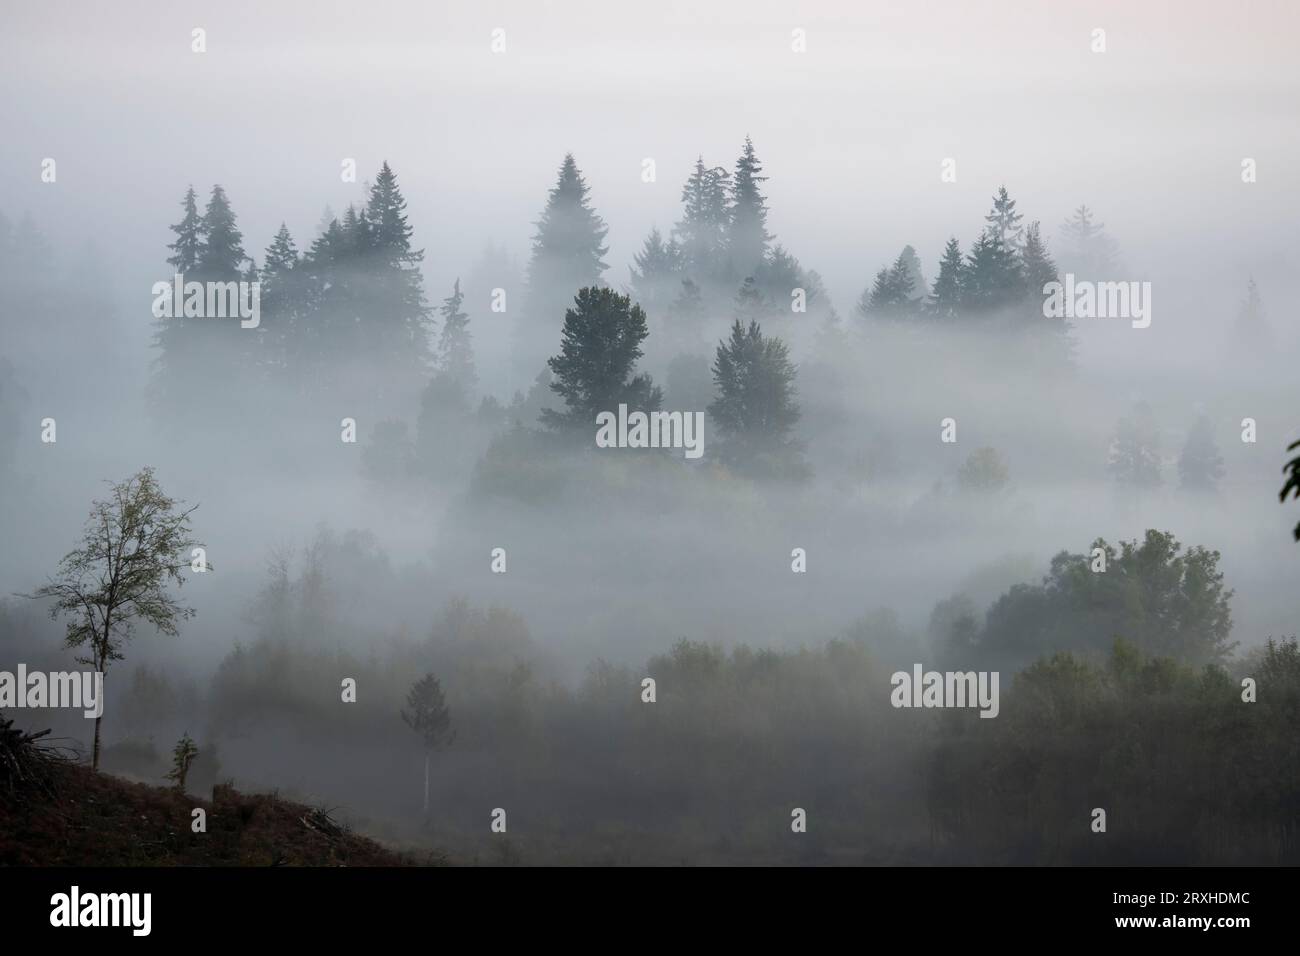 Le brouillard matinal enveloppe les arbres à feuilles persistantes ; Washington, États-Unis d'Amérique Banque D'Images